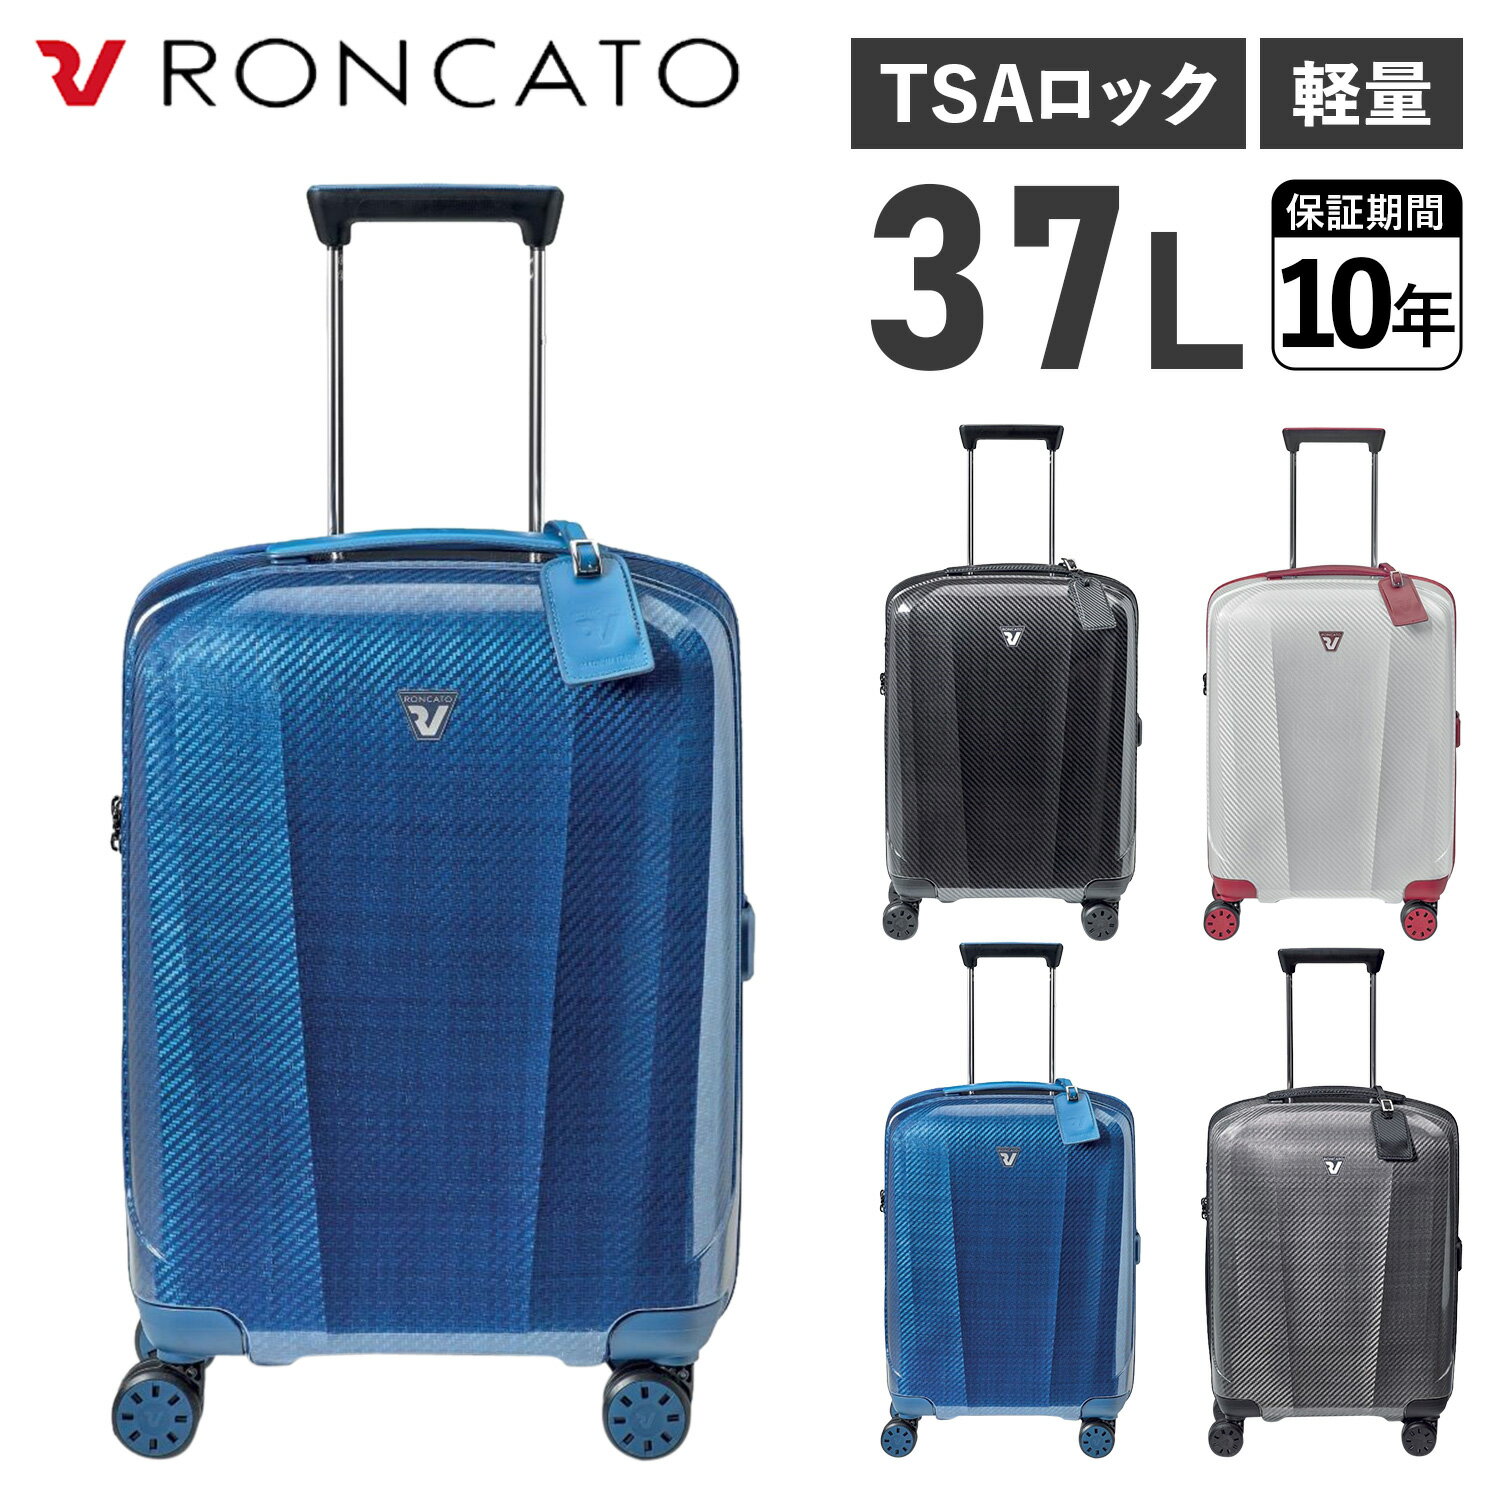 RONCATO WE ARE ロンカート スーツケース キャリーケース キャリーバッグ メンズ レディース 37L 軽量 機内持ち込み可能 小型 静音 ブラック ホワイト ブルー シルバー 黒 白 5953